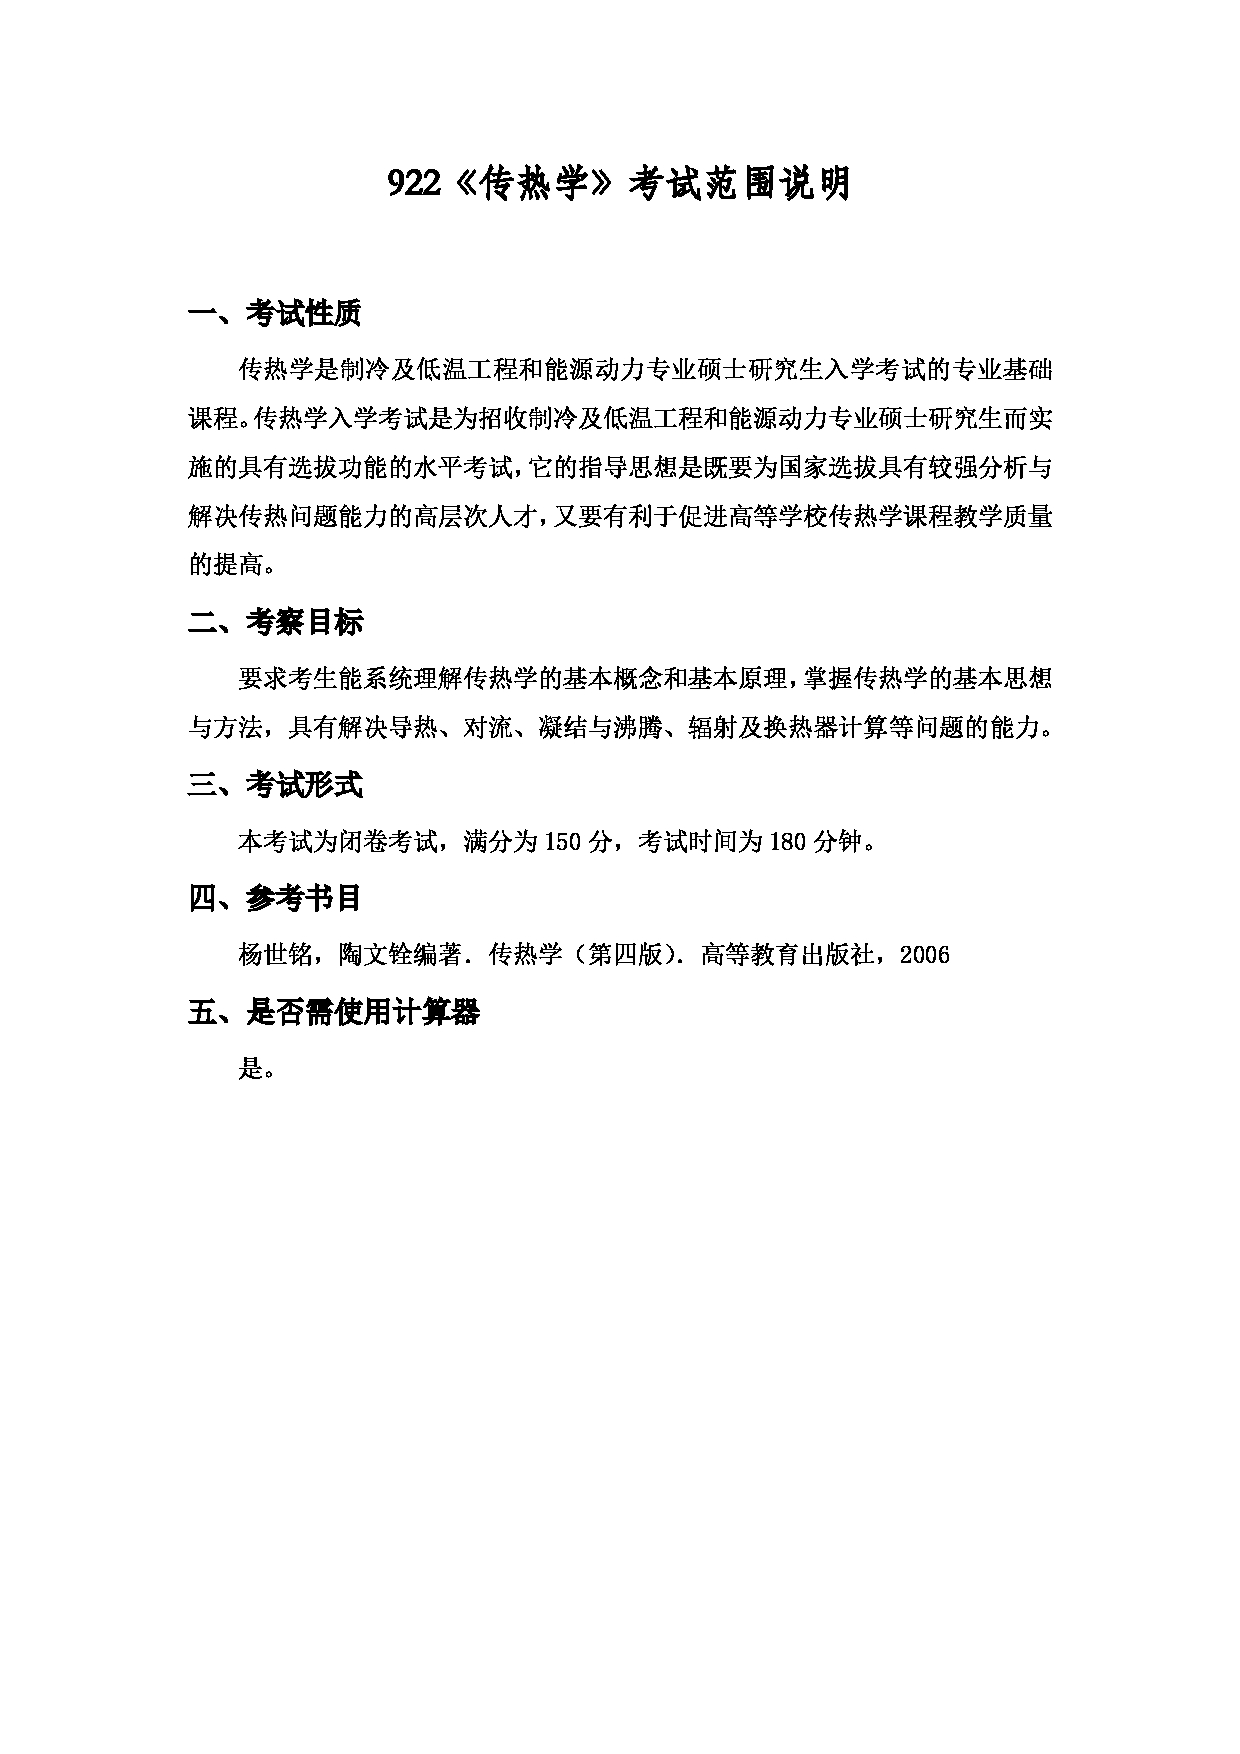 2022考研大纲：上海海洋大学2022年考研自命题科目 922传热学 考试大纲第1页